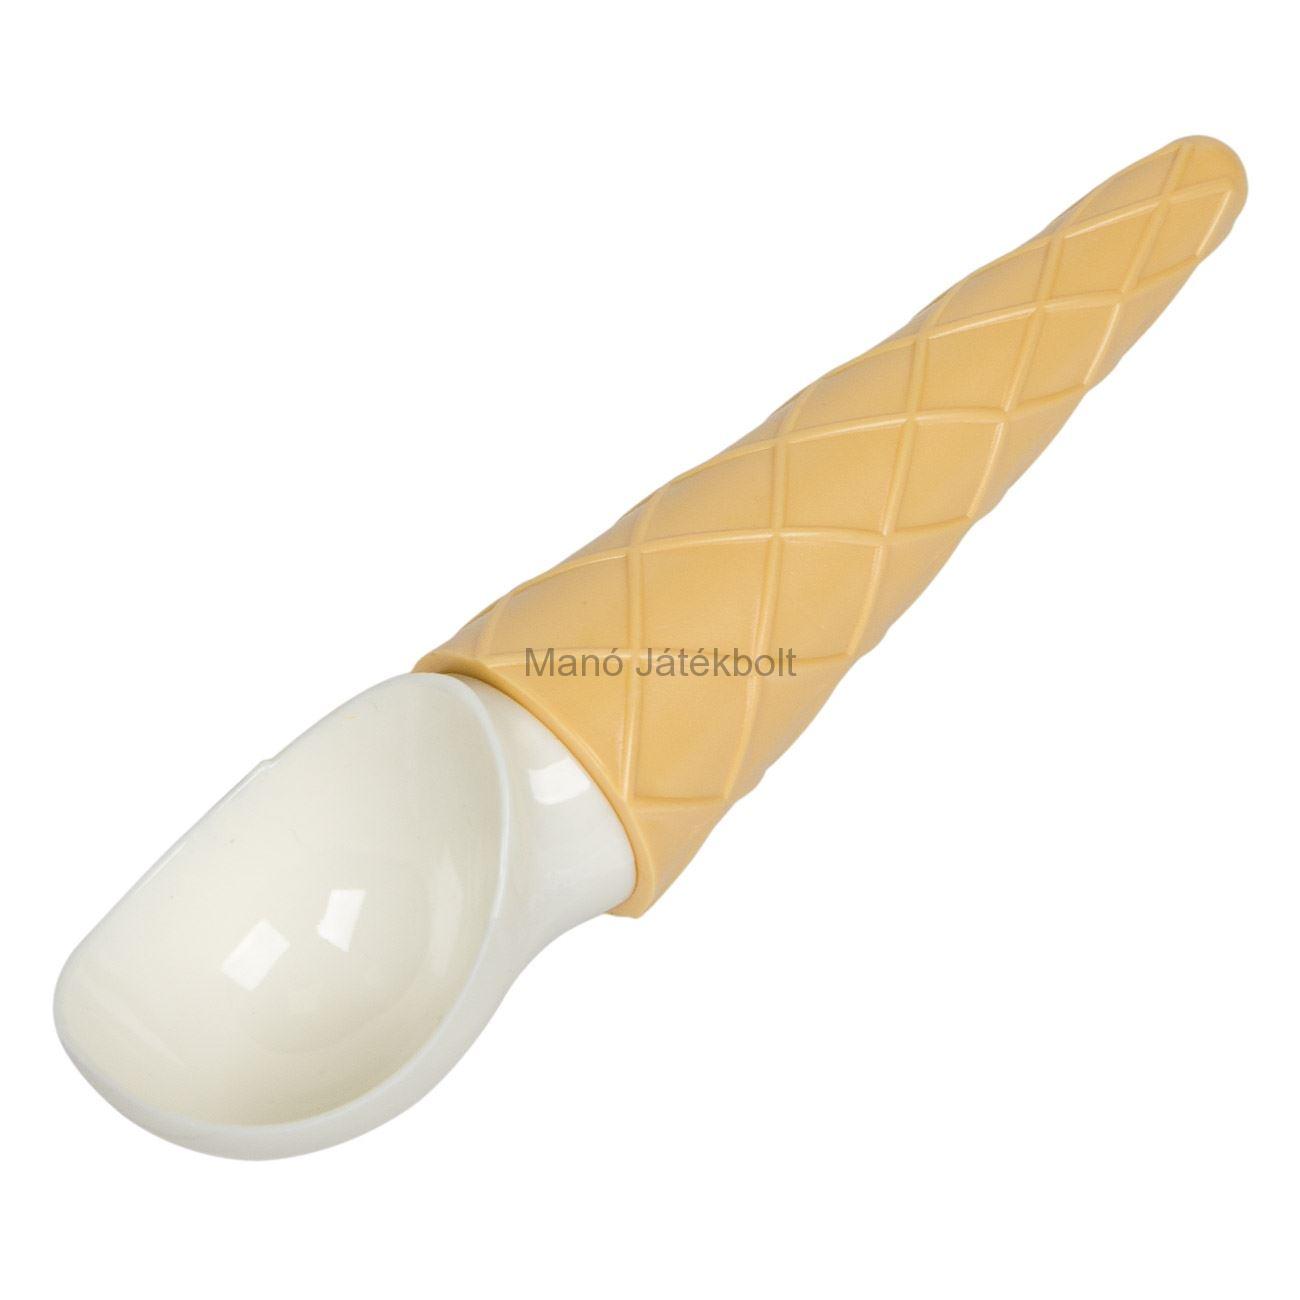 Fagylaltkanál kúp 19 cm